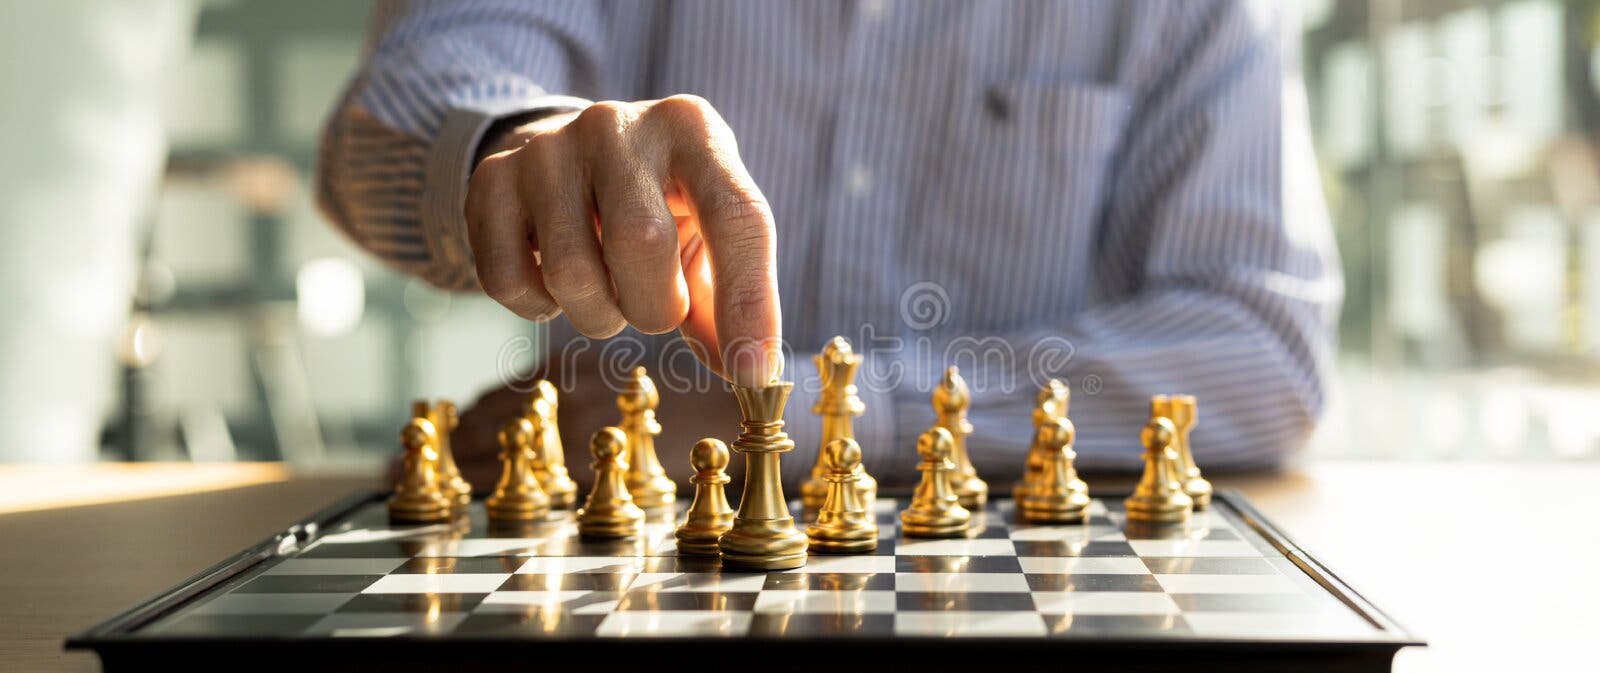 Pessoa jogando jogo de tabuleiro de xadrez, imagem conceitual de empresária  segurando peças de xadrez contra adversário de xadrez contra competição de  negócios, planejando estratégias de negócios para derrotar concorrentes de  negócios